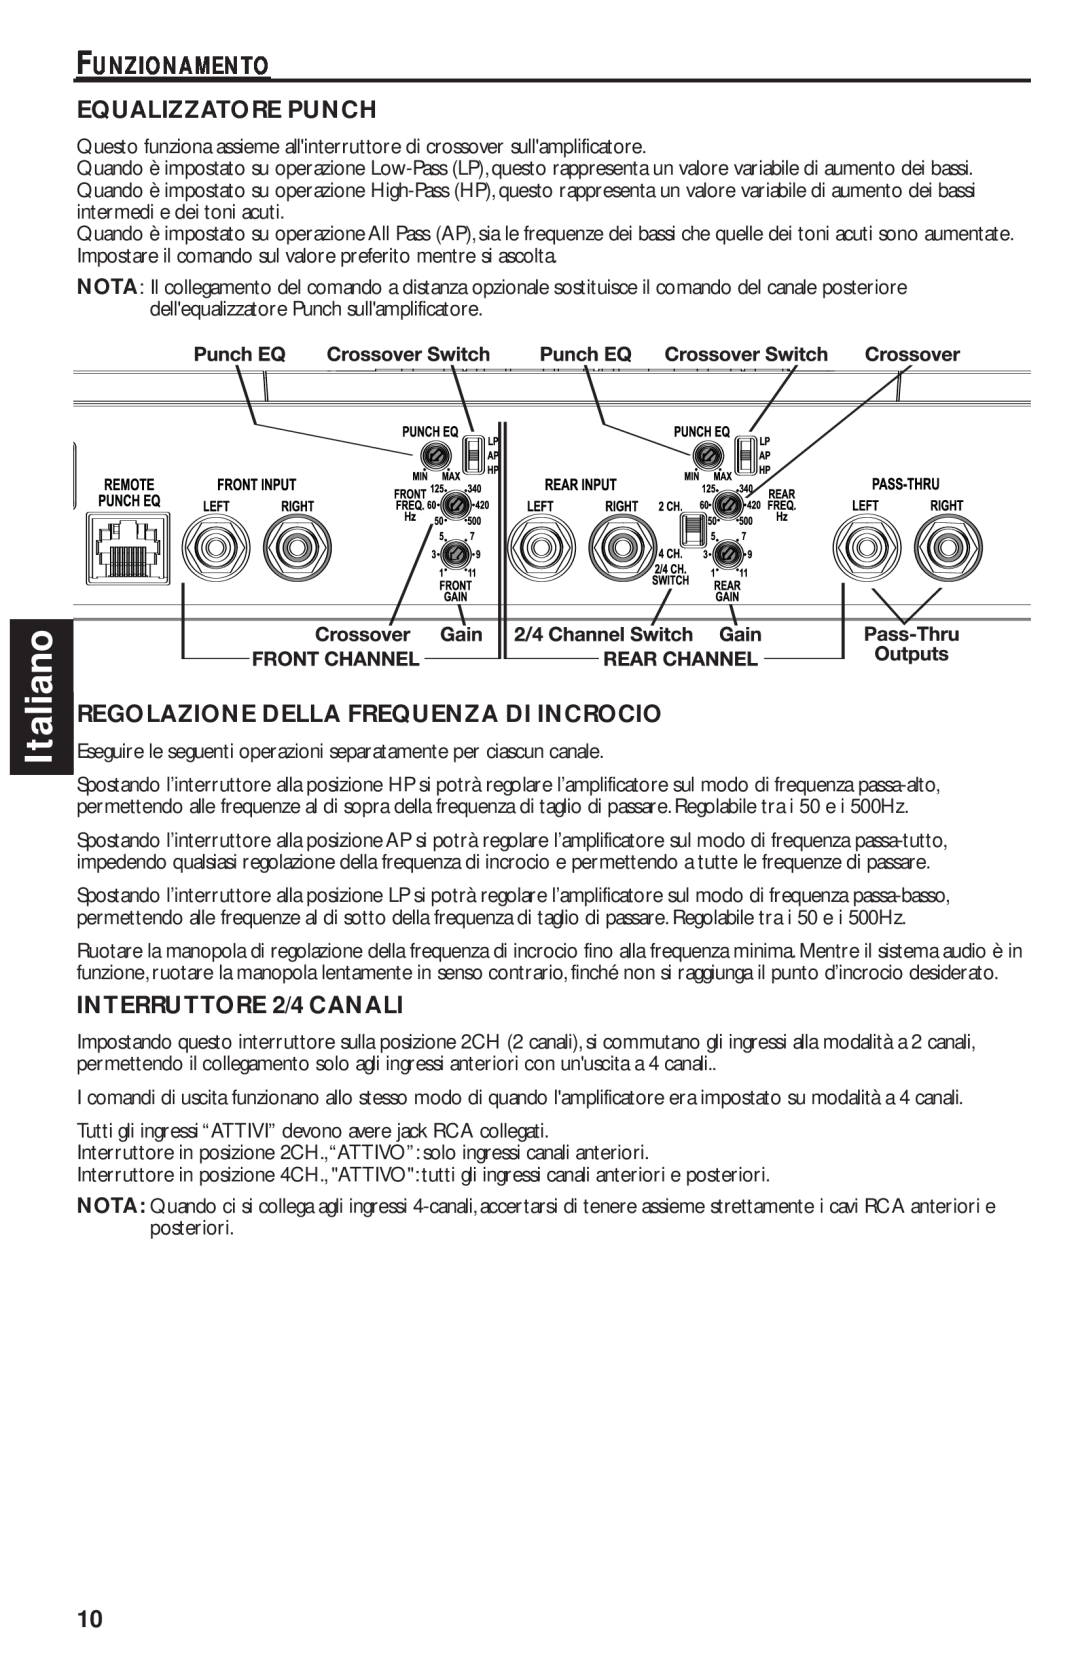 Rockford Fosgate T1000-4 manual Italiano, Funzionamento Equalizzatore Punch, Regolazione Della Frequenza Di Incrocio 